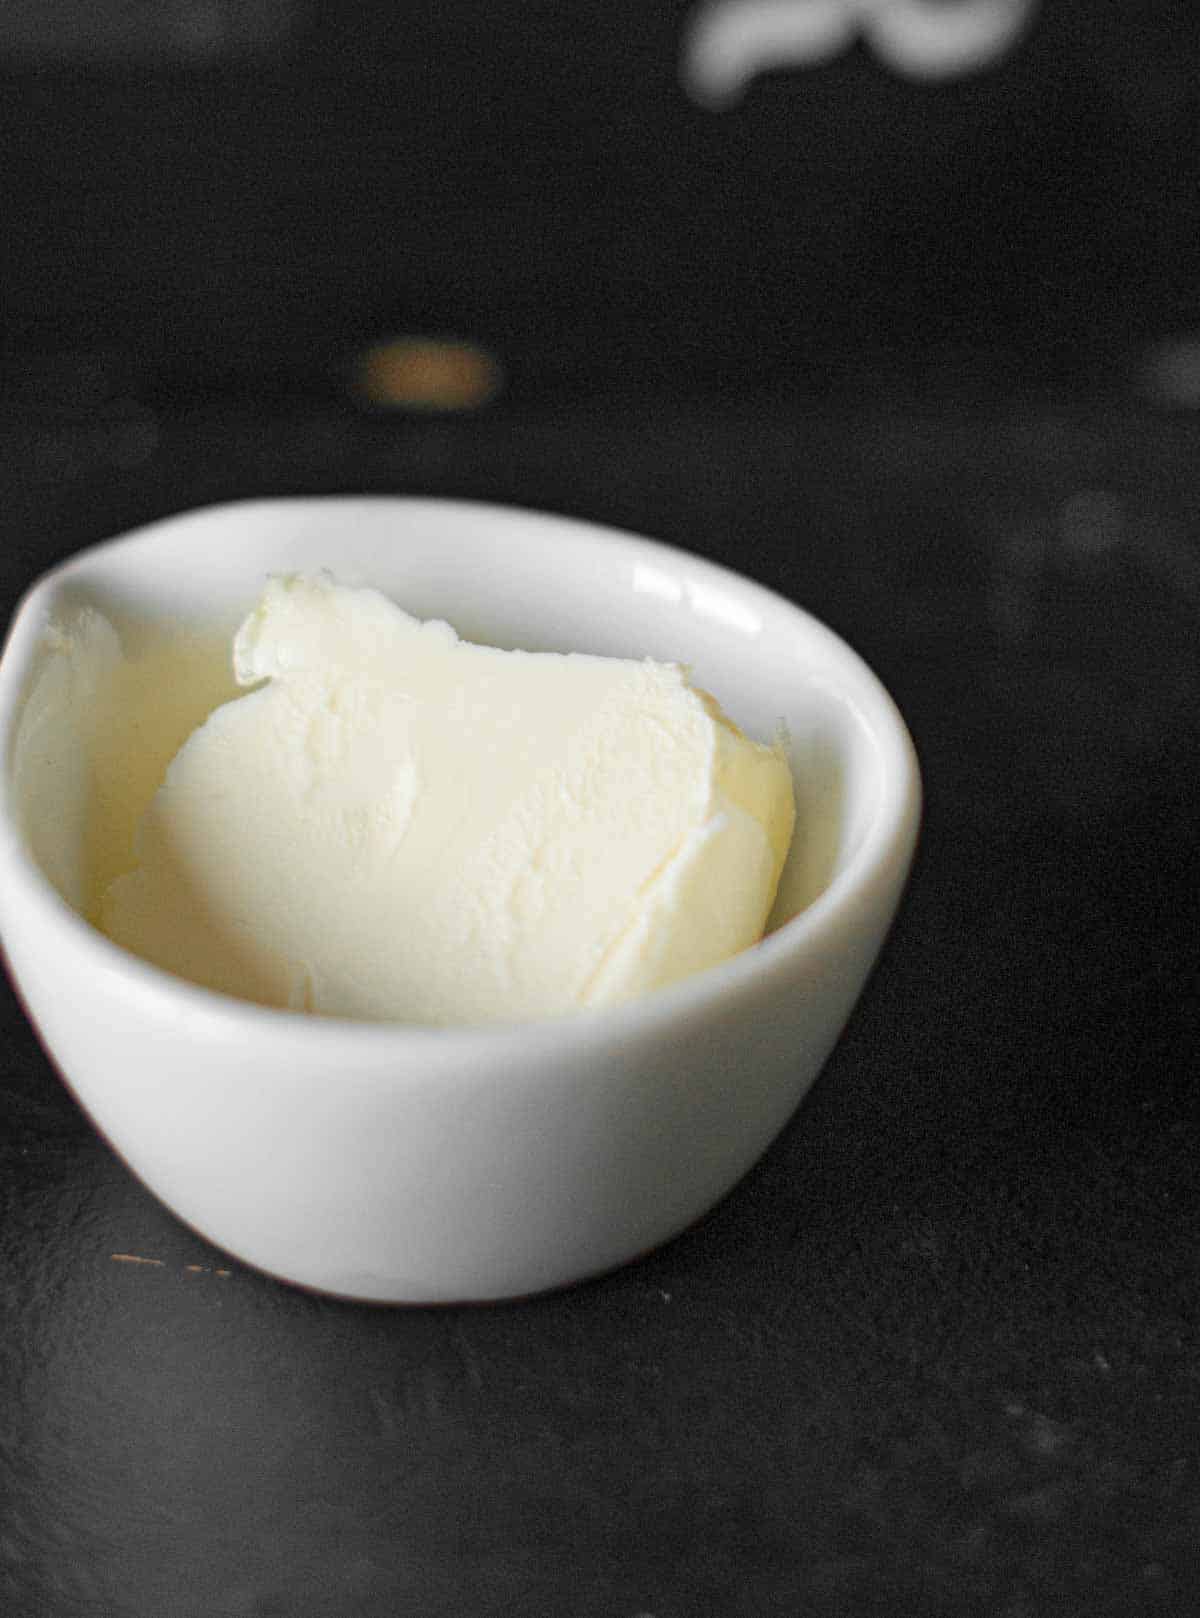 Bild von der Margarine